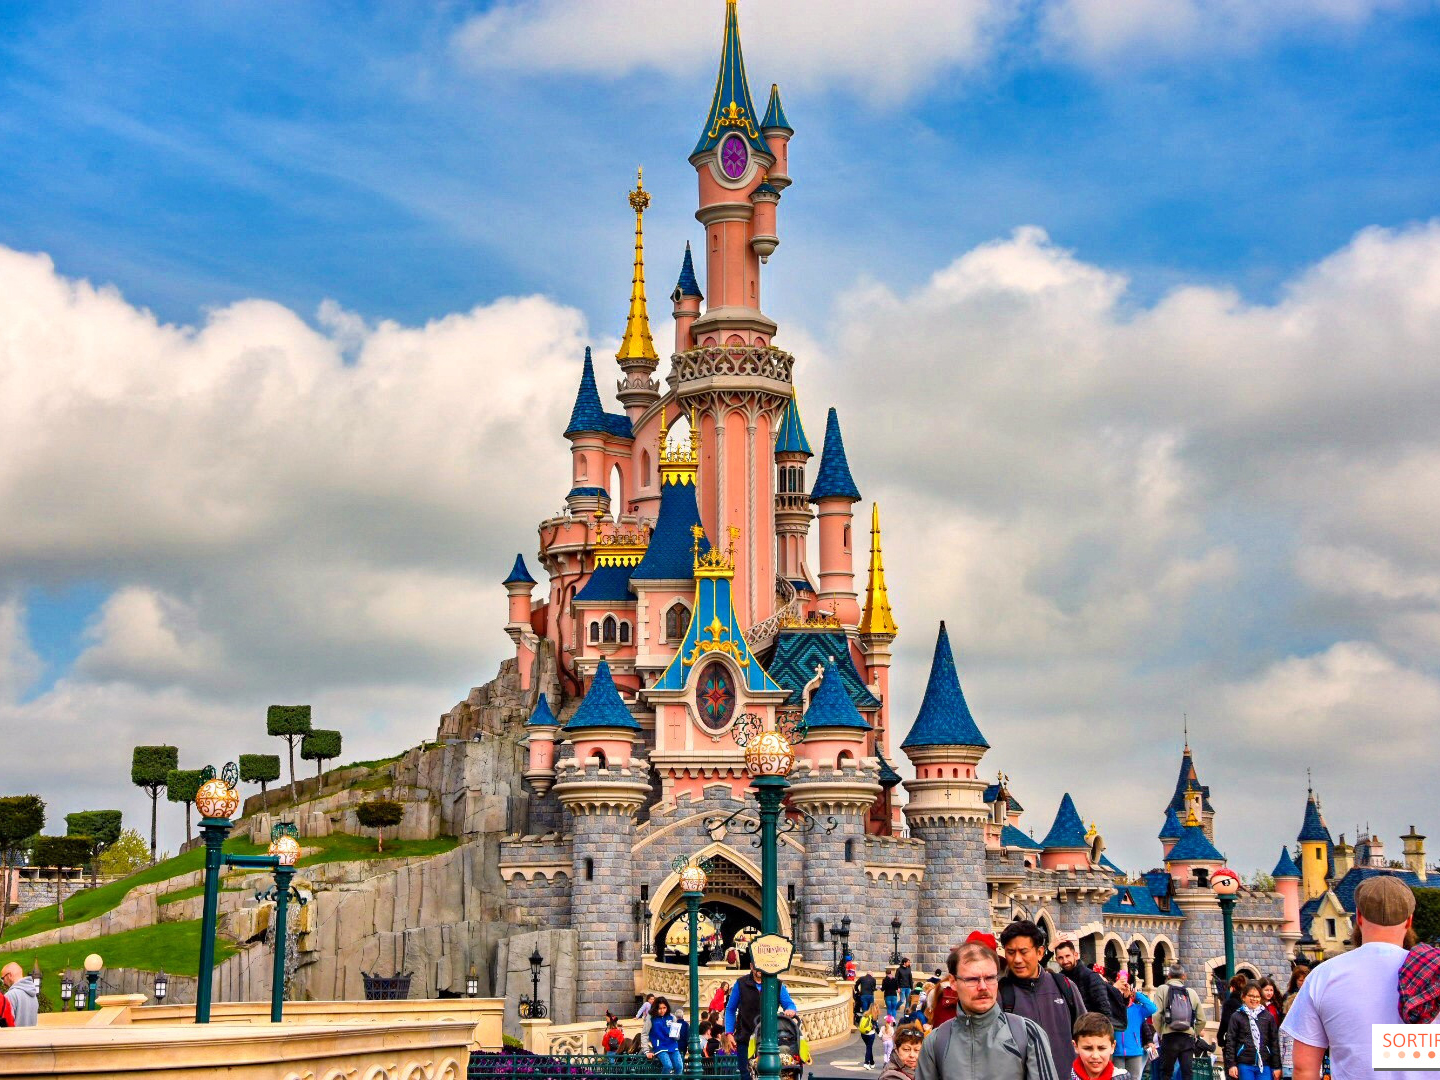 Theme parks around the world to explore from Dubai - Disneyland, Paris